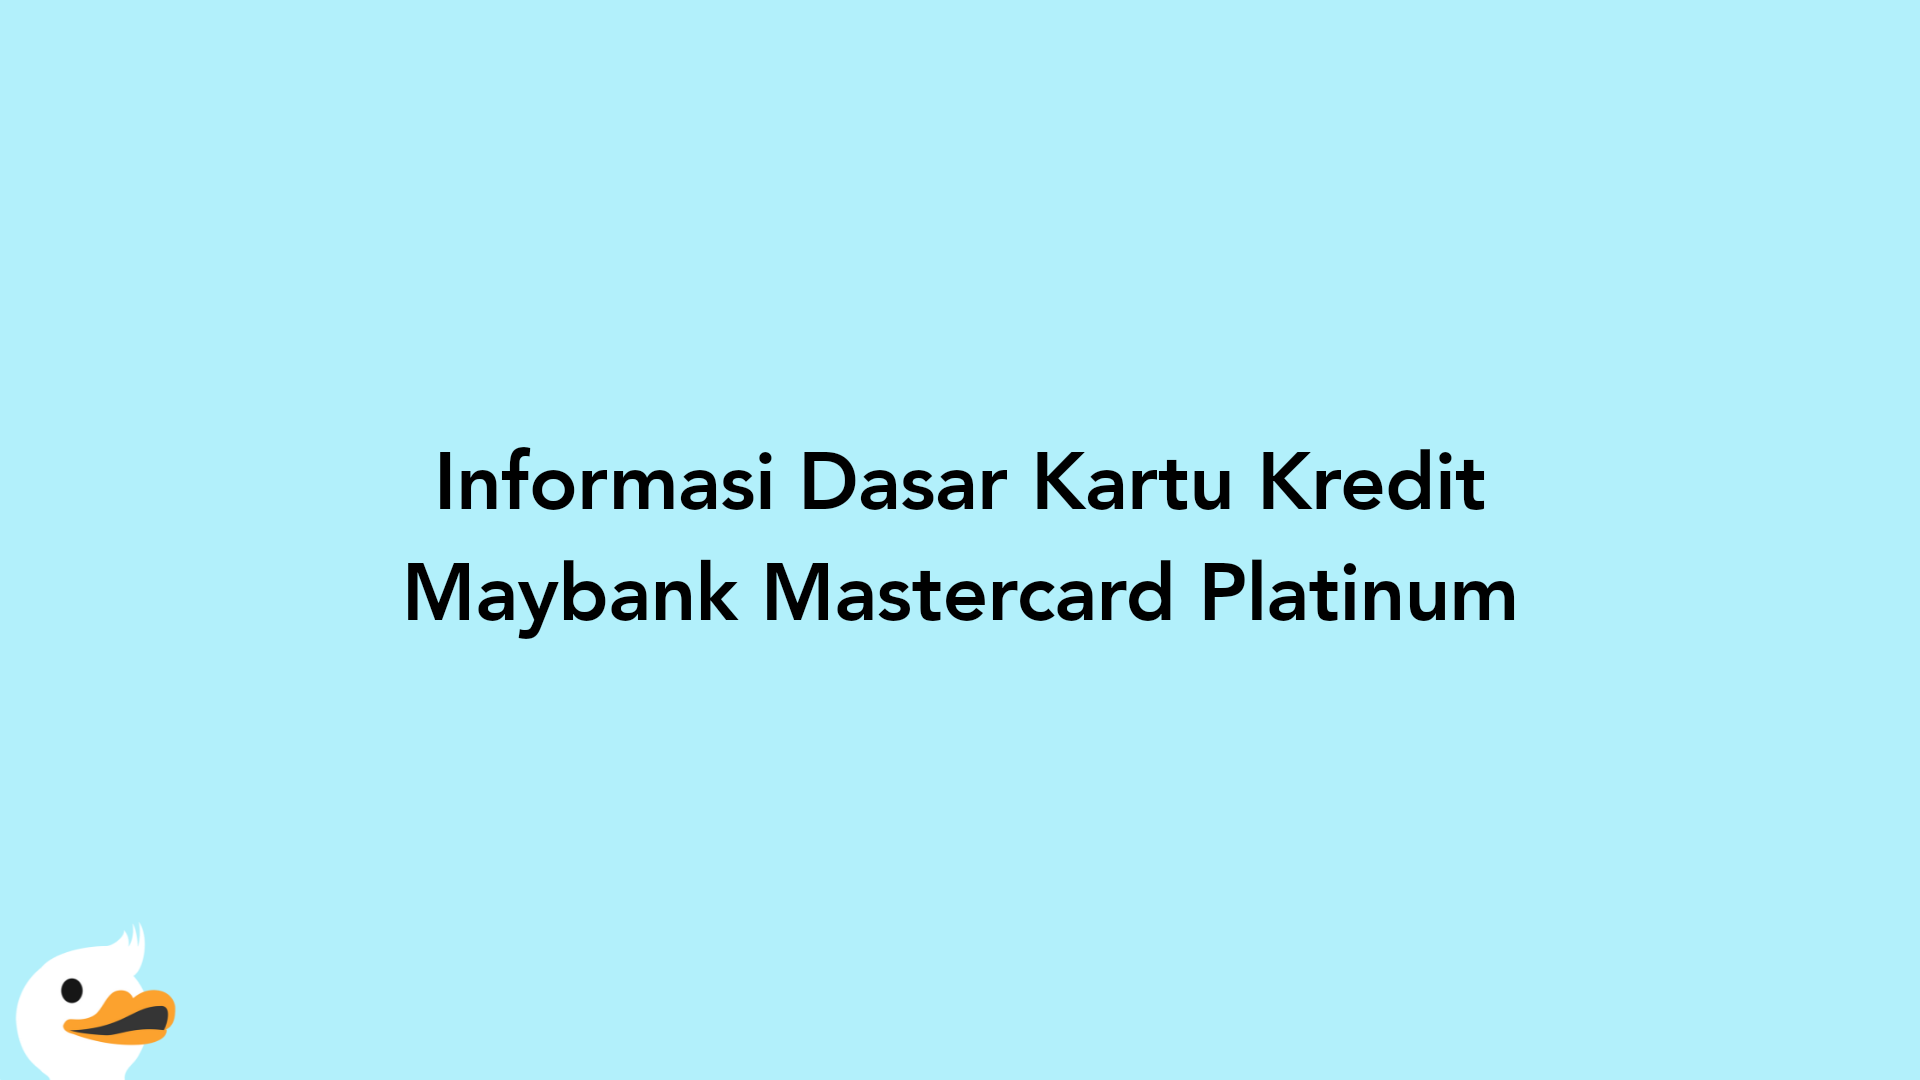 Informasi Dasar Kartu Kredit Maybank Mastercard Platinum